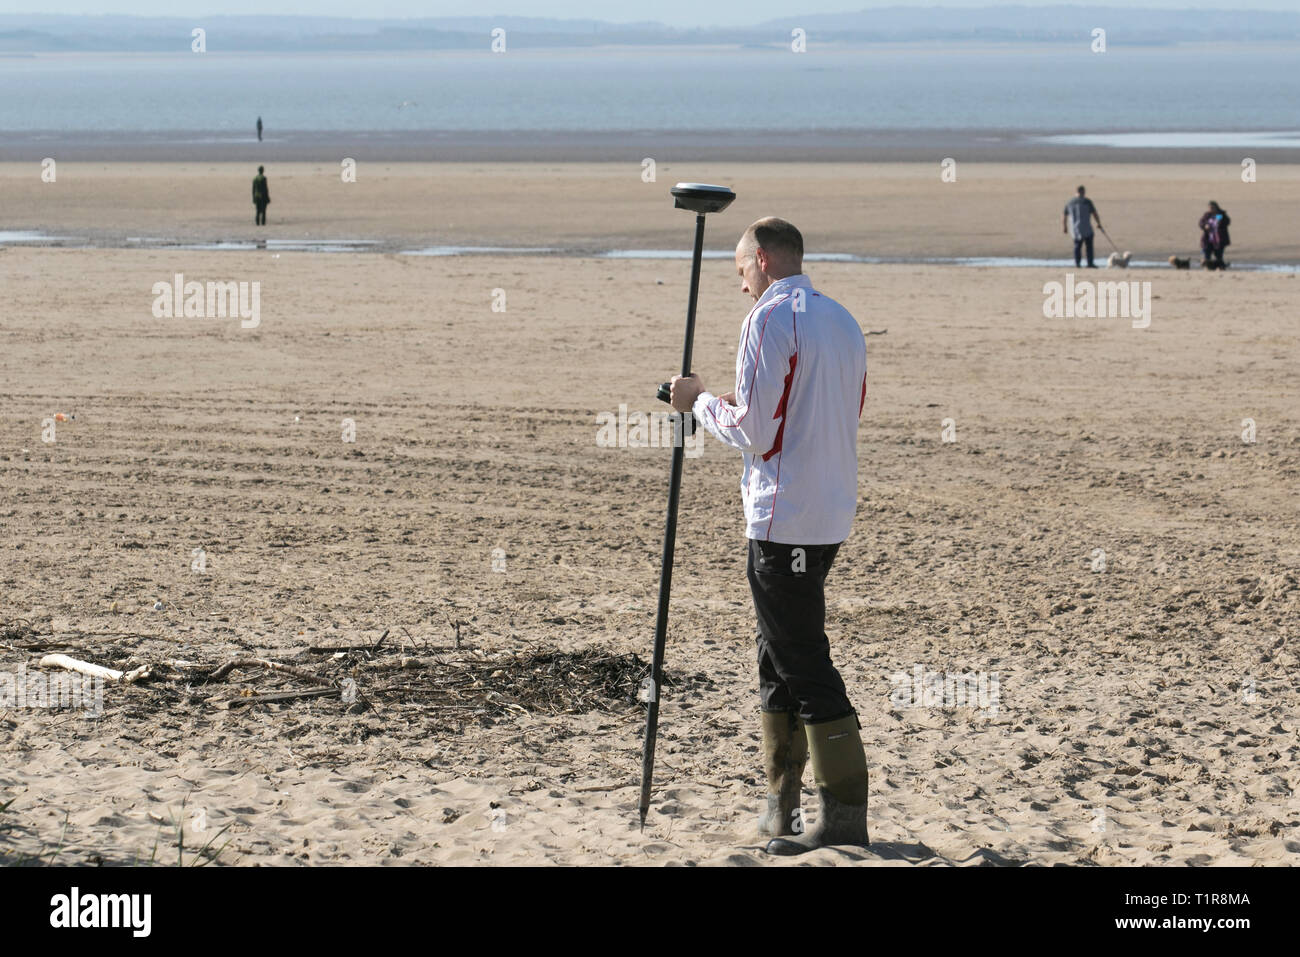 Strandbefragung durch Mitarbeiter des Sefton council, die Leica GPS-Vermessungsgeräte als Teil der Küstenüberwachung verwenden, die alle 6 Monate an einem ausgedehnten Sandstrand durchgeführt wird, um Erosion und Akkretion zu überwachen. Stockfoto